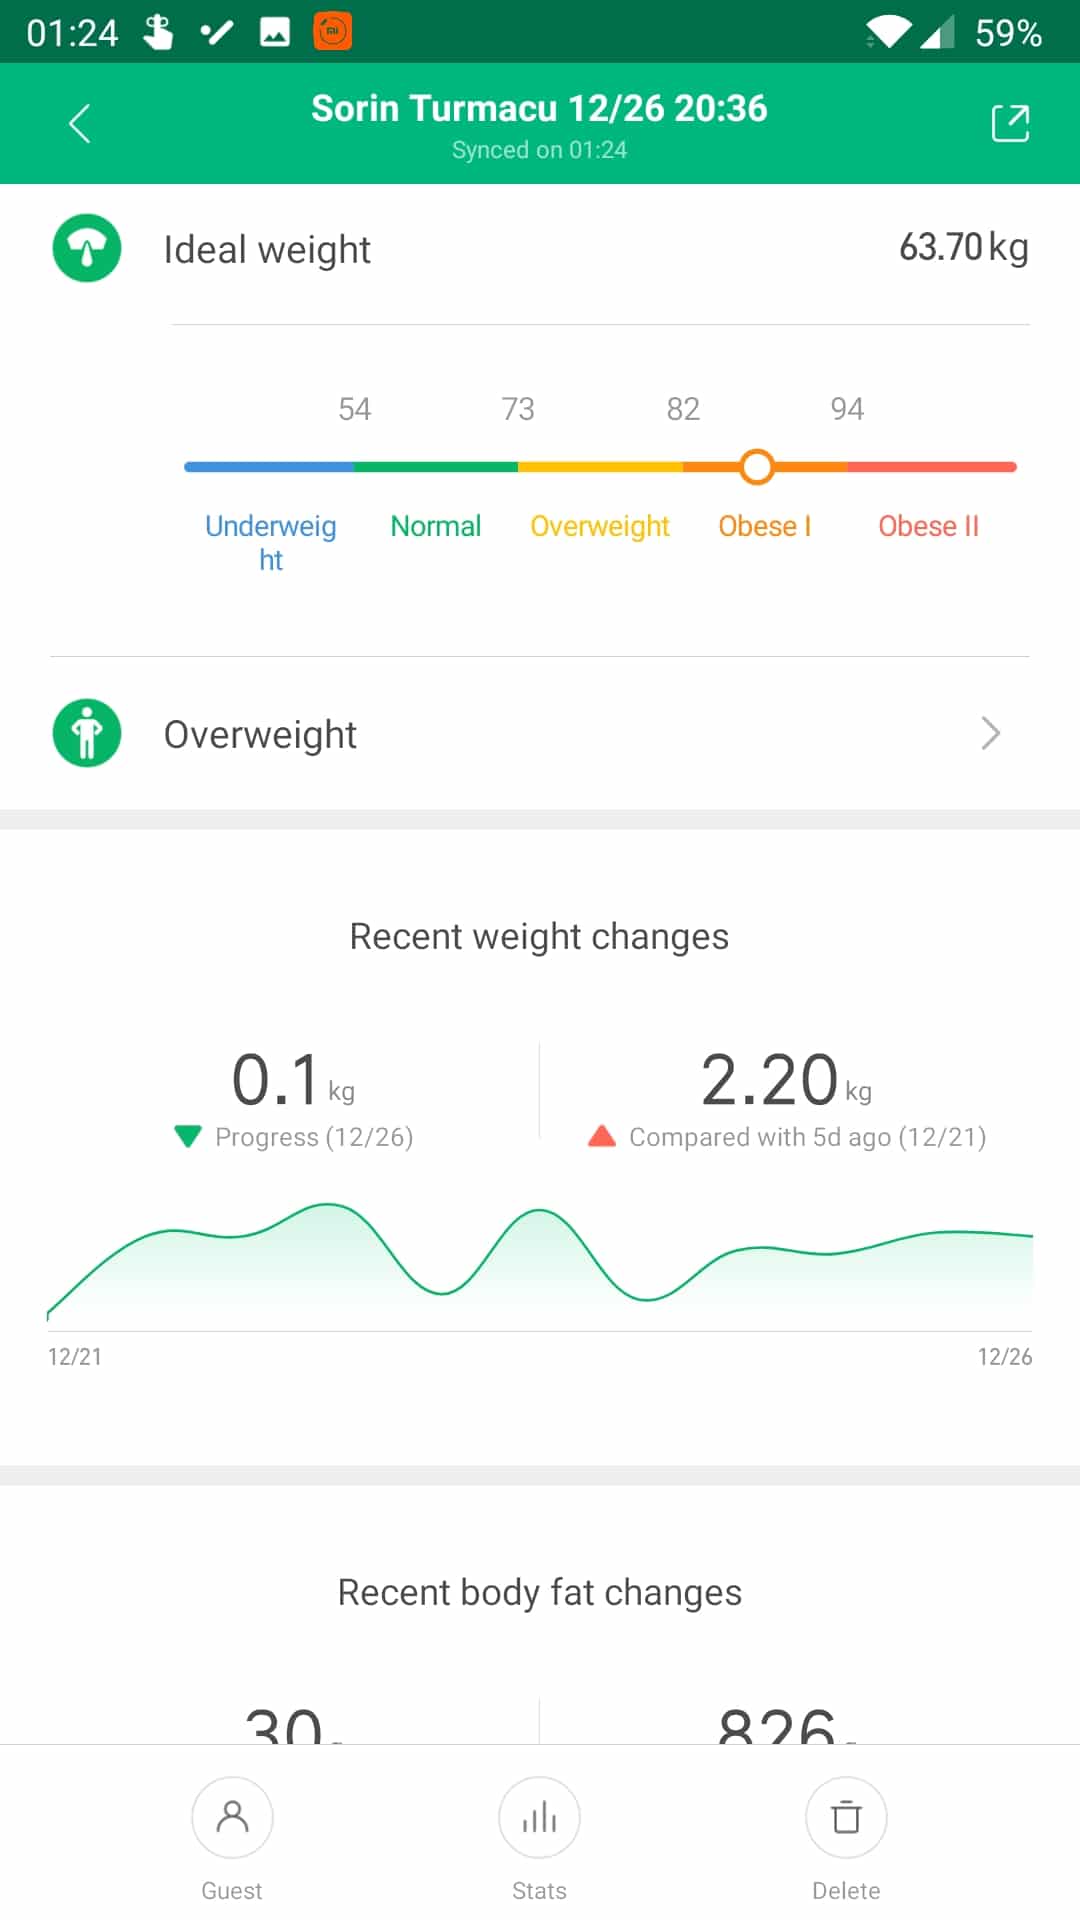 Xiaomi Mi Smart Scale 2 vs Mi Body Composition Scale 2: Where is